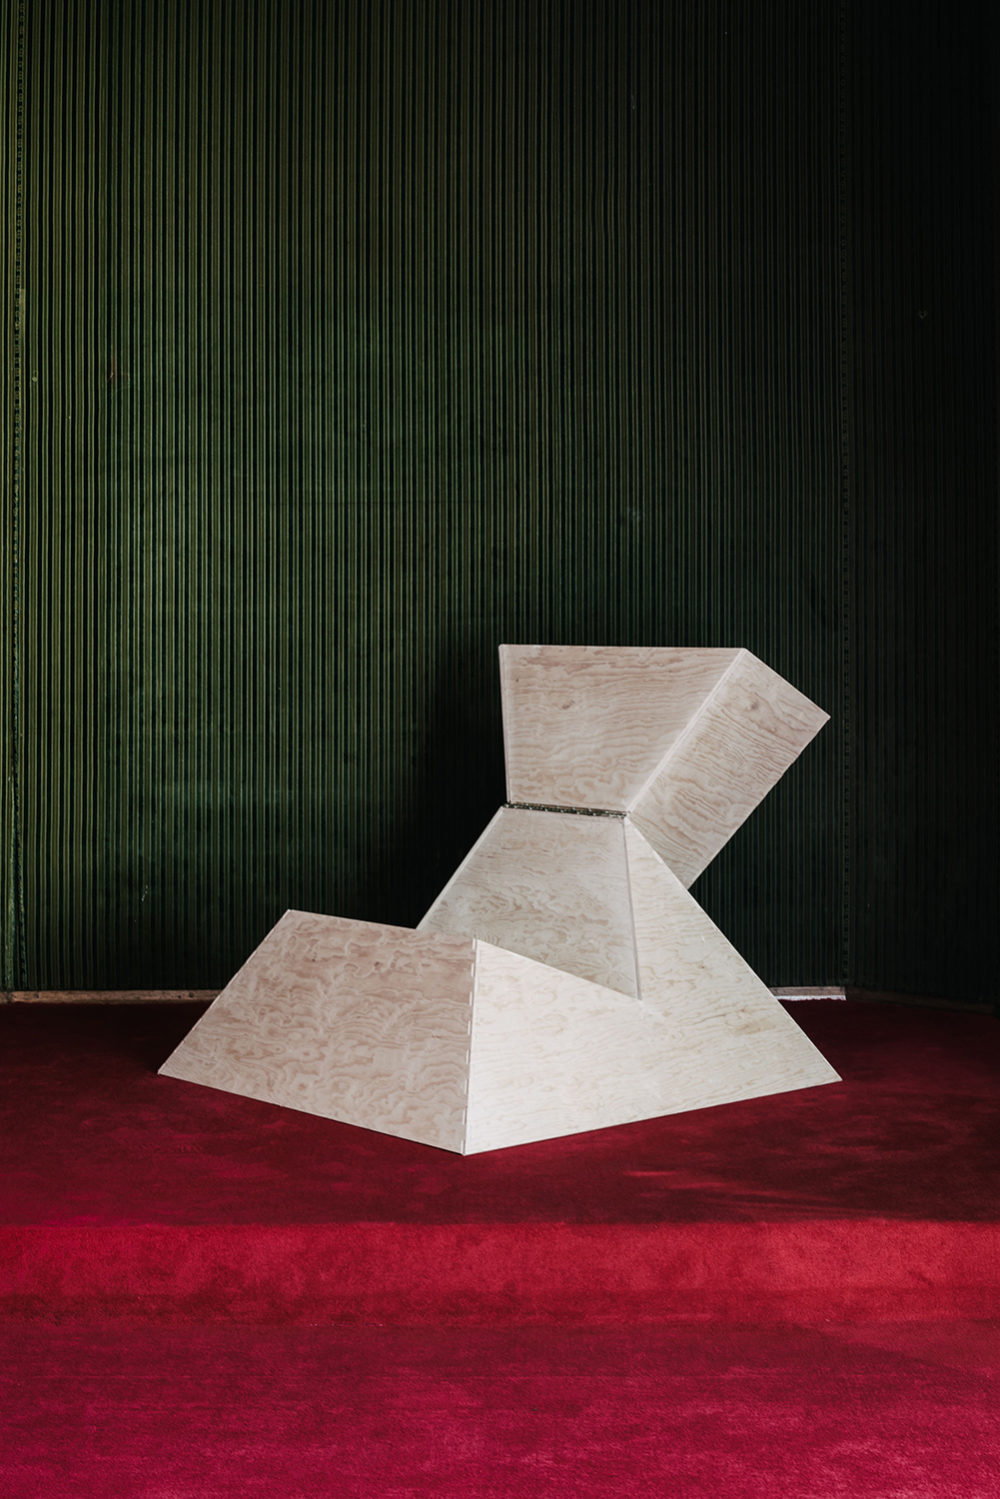 Pyramid Chair, 2019